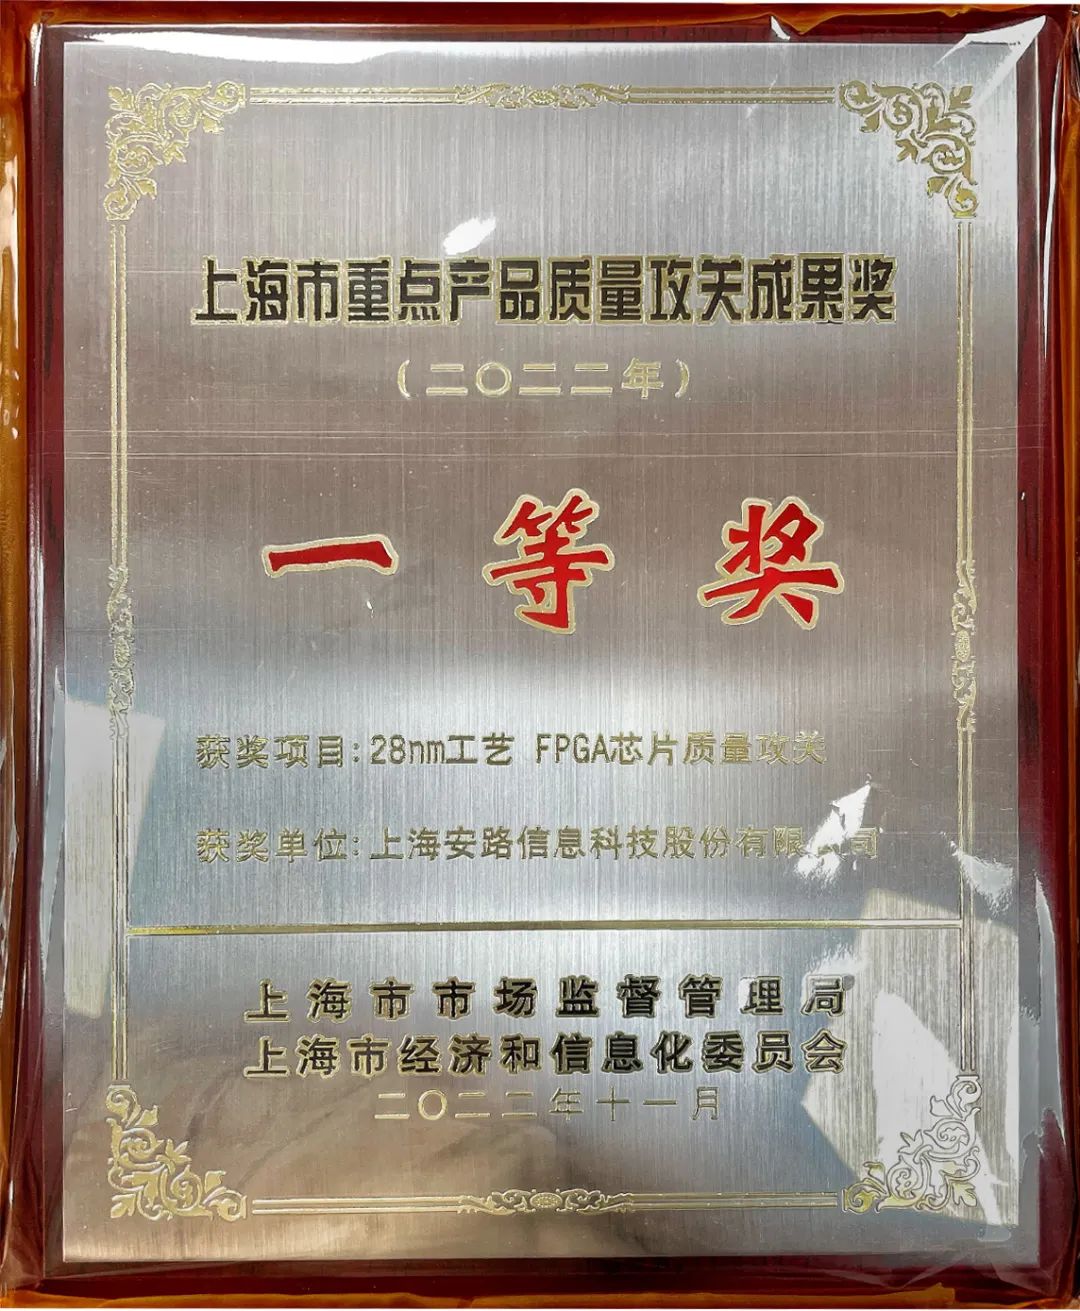 安路科技荣获上海市重点产品质量攻关成果一等奖！